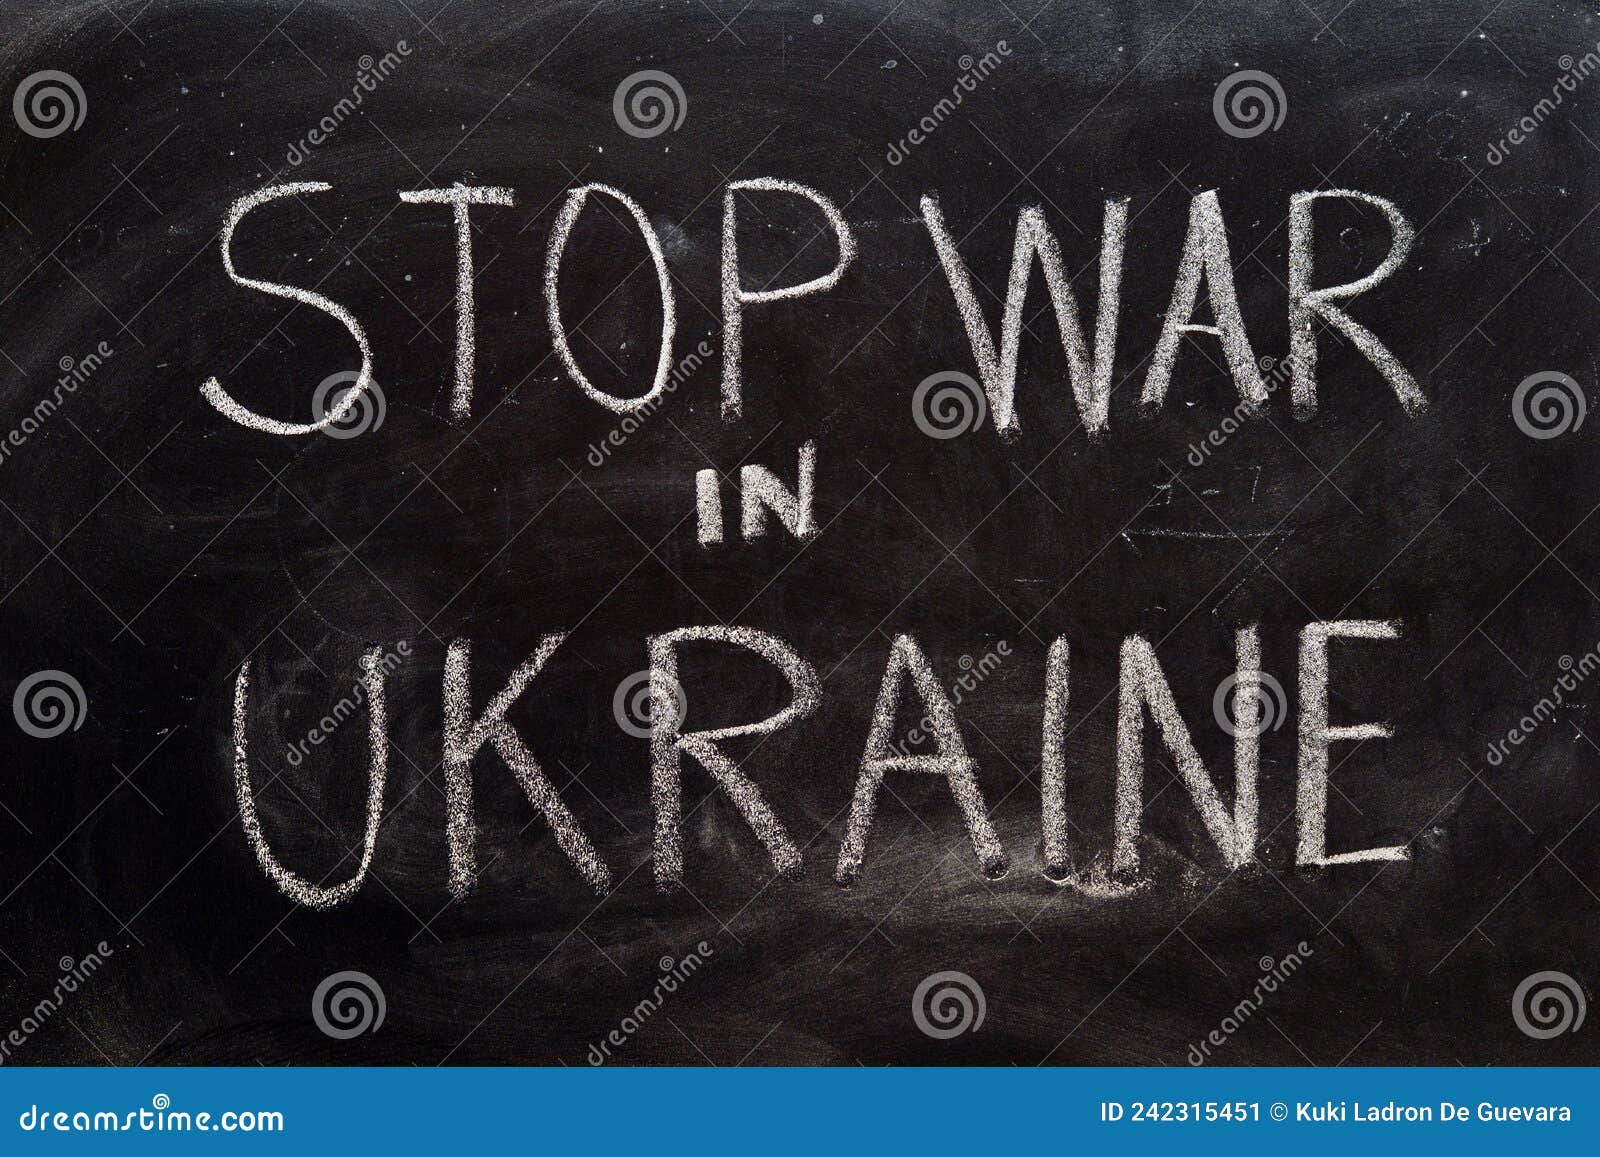 stop war in ukraine, written on a blackboard